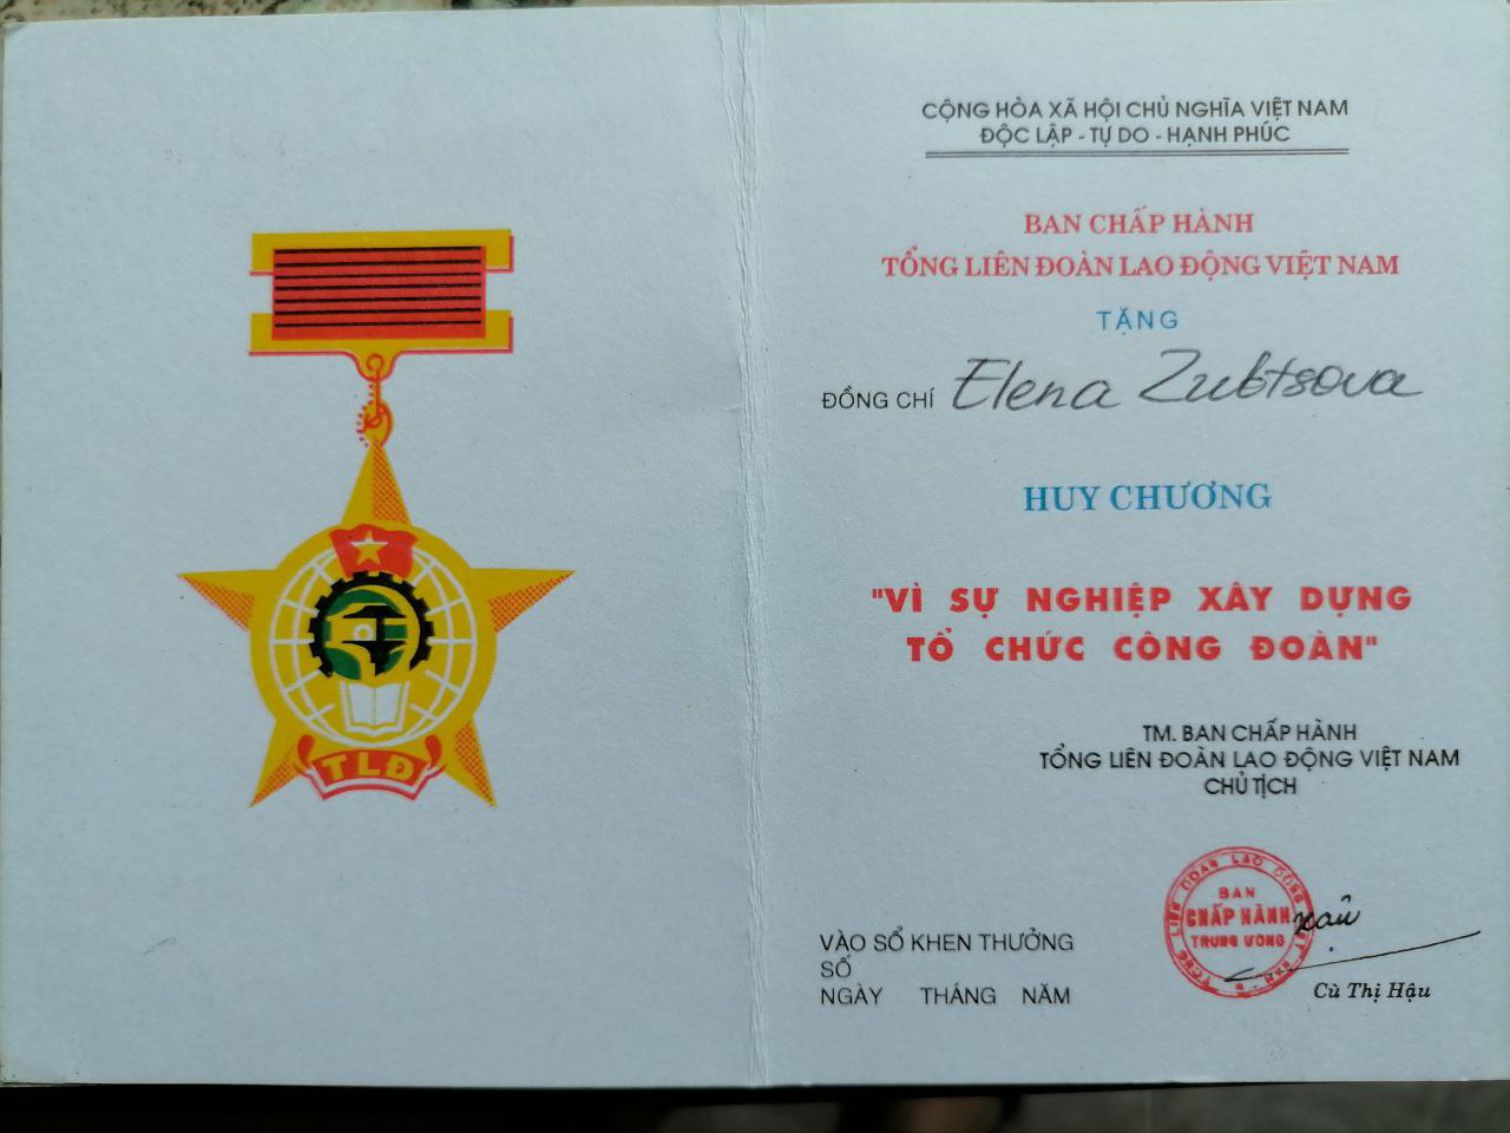 Huy chương “Vì sự nghiệp xây dựng tổ chức Công đoàn” của Tổng Liên đoàn Lao Động Việt Nam trao tặng chị Elena Zubtsova. Ảnh: Nhân vật cung cấp